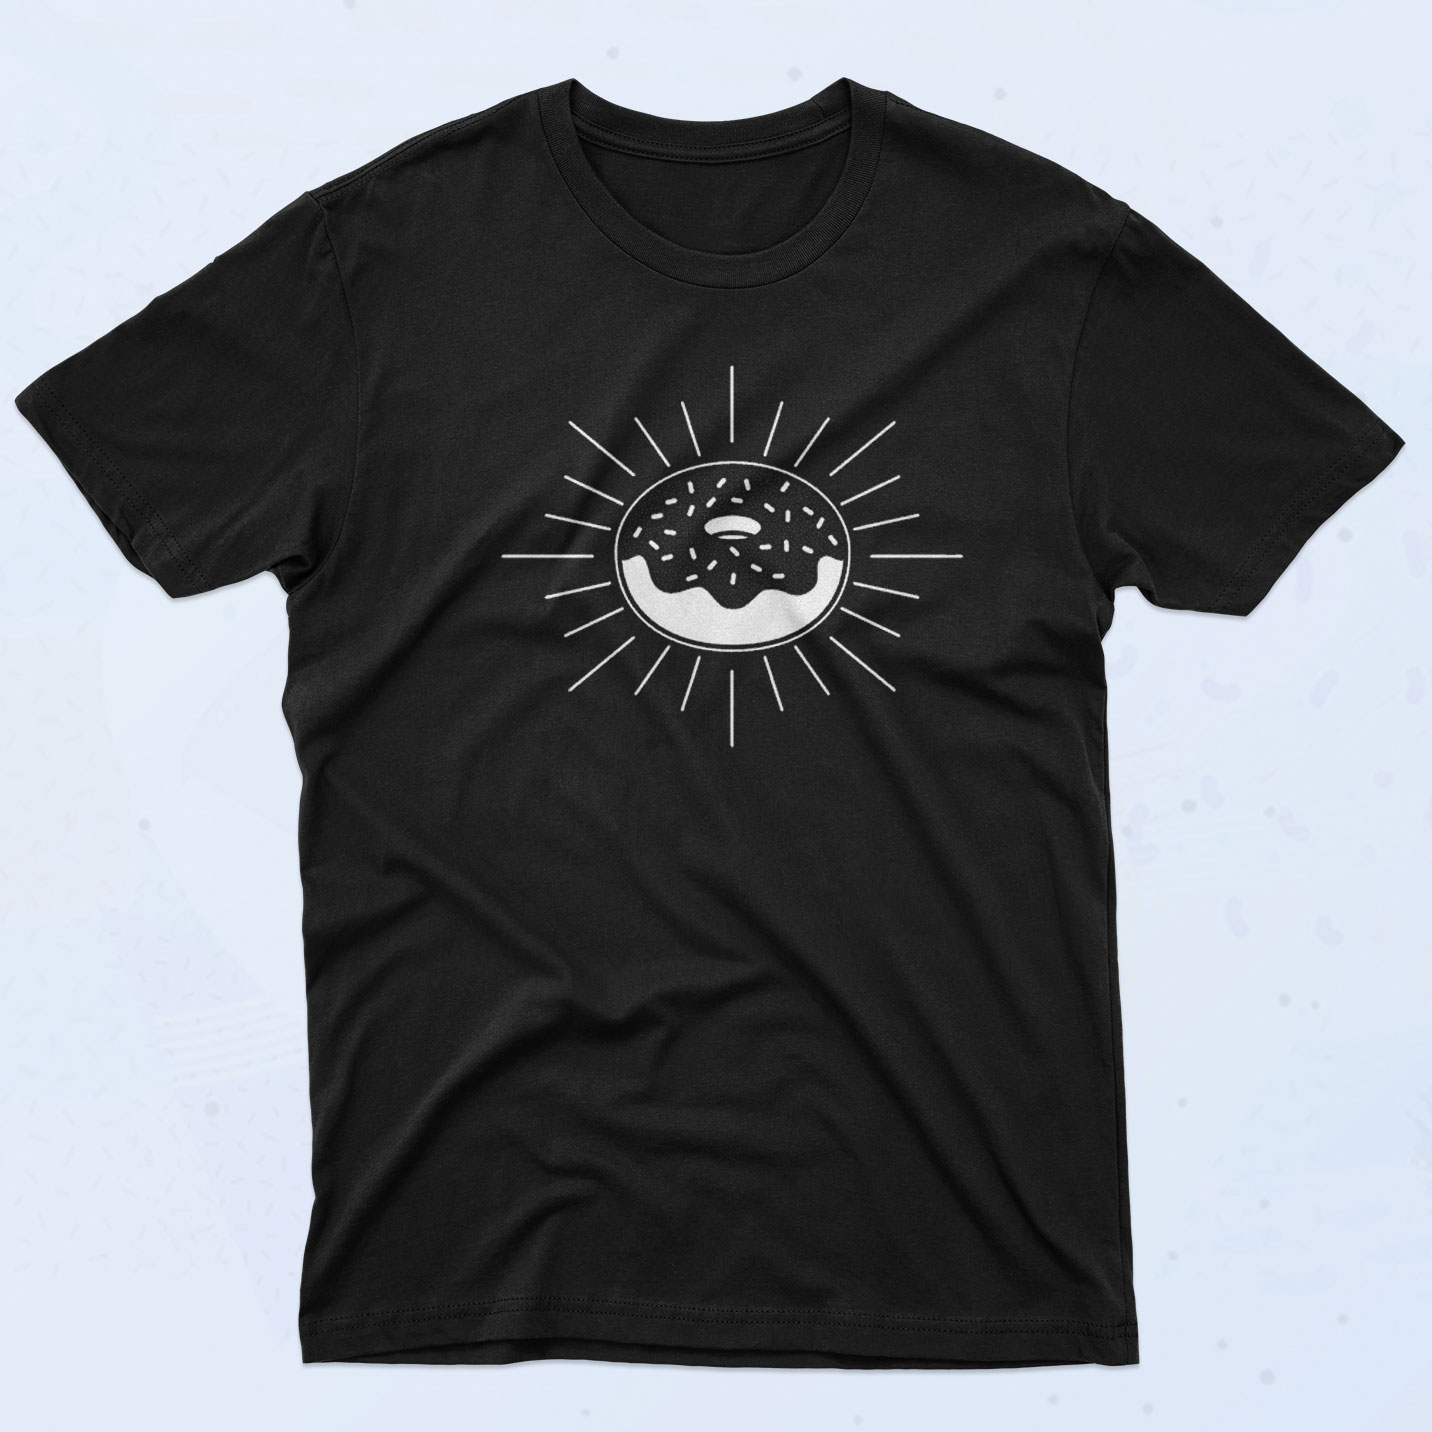 Unisex Nirvana Bleach Official Fashion T-Shirts 